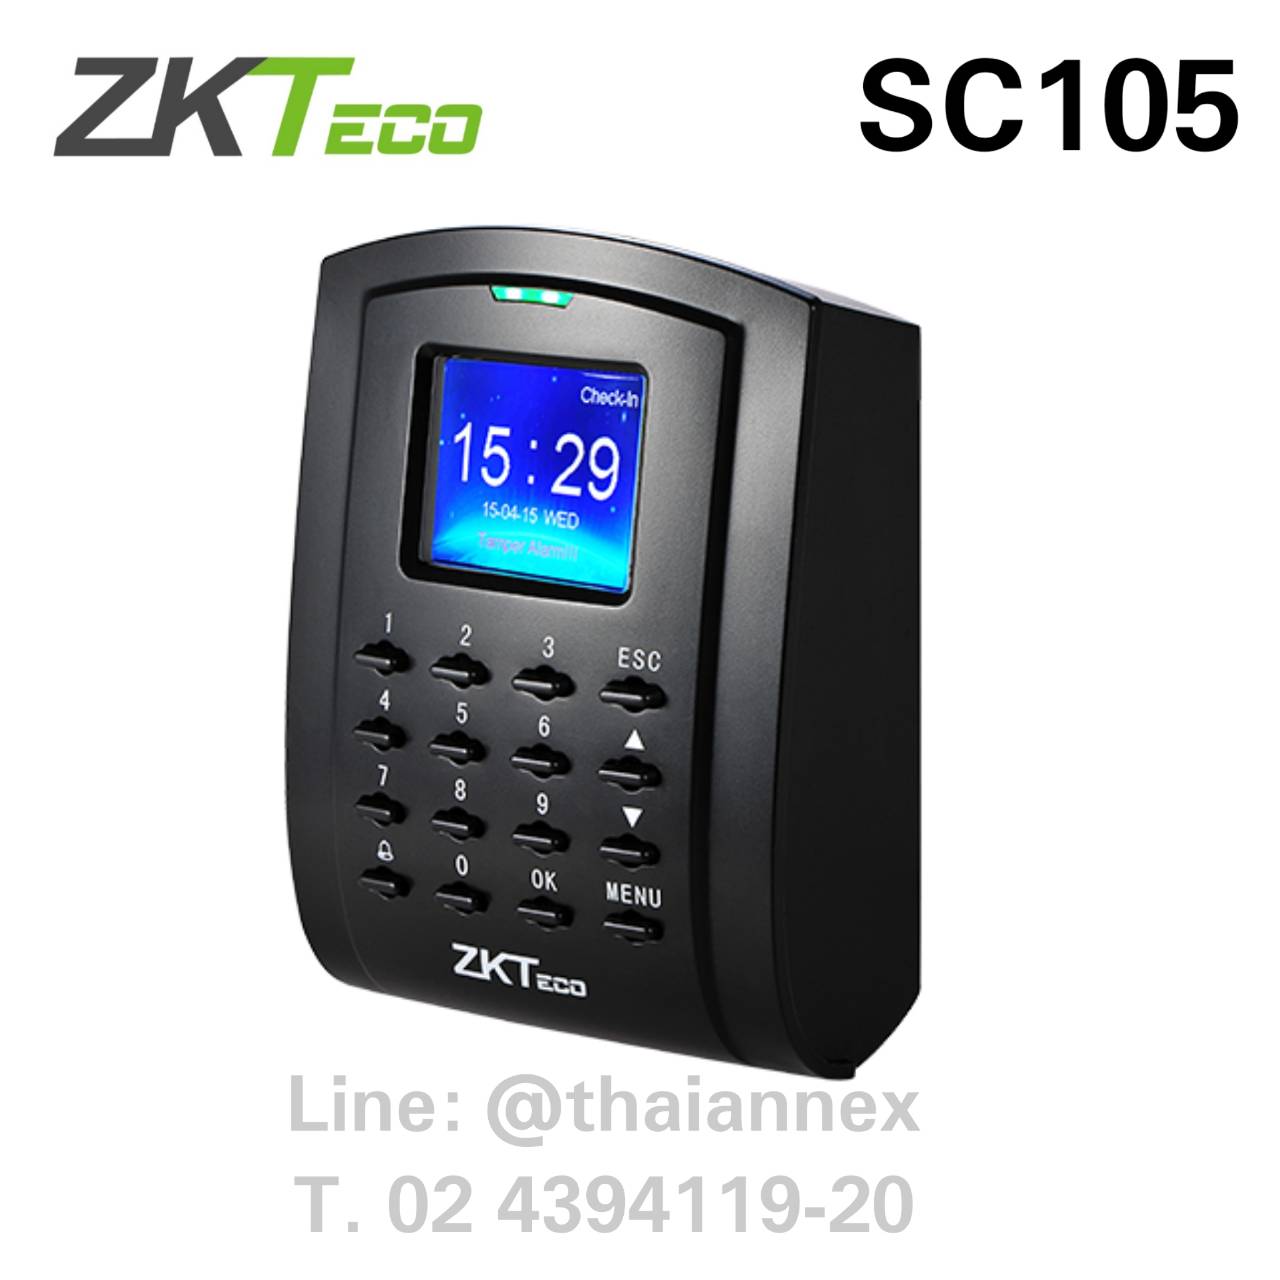 เครื่องทาบบัตร ZK SC105 (Access Control)